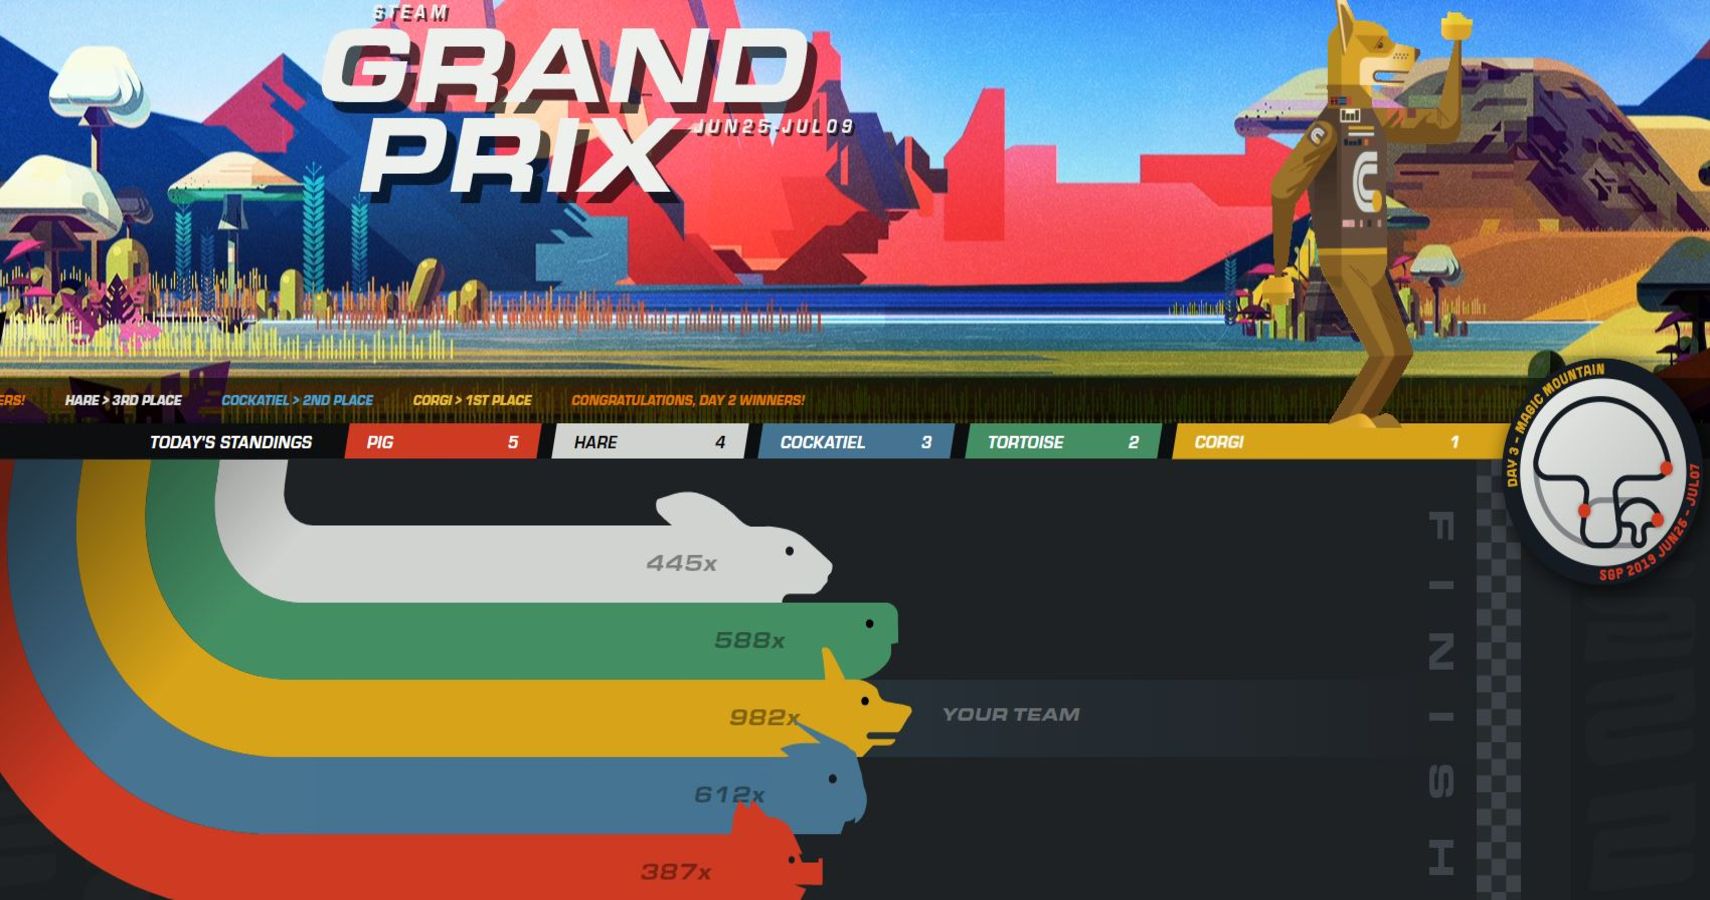 Steam Gets Widespread Criticism For Grand Prix Confusion